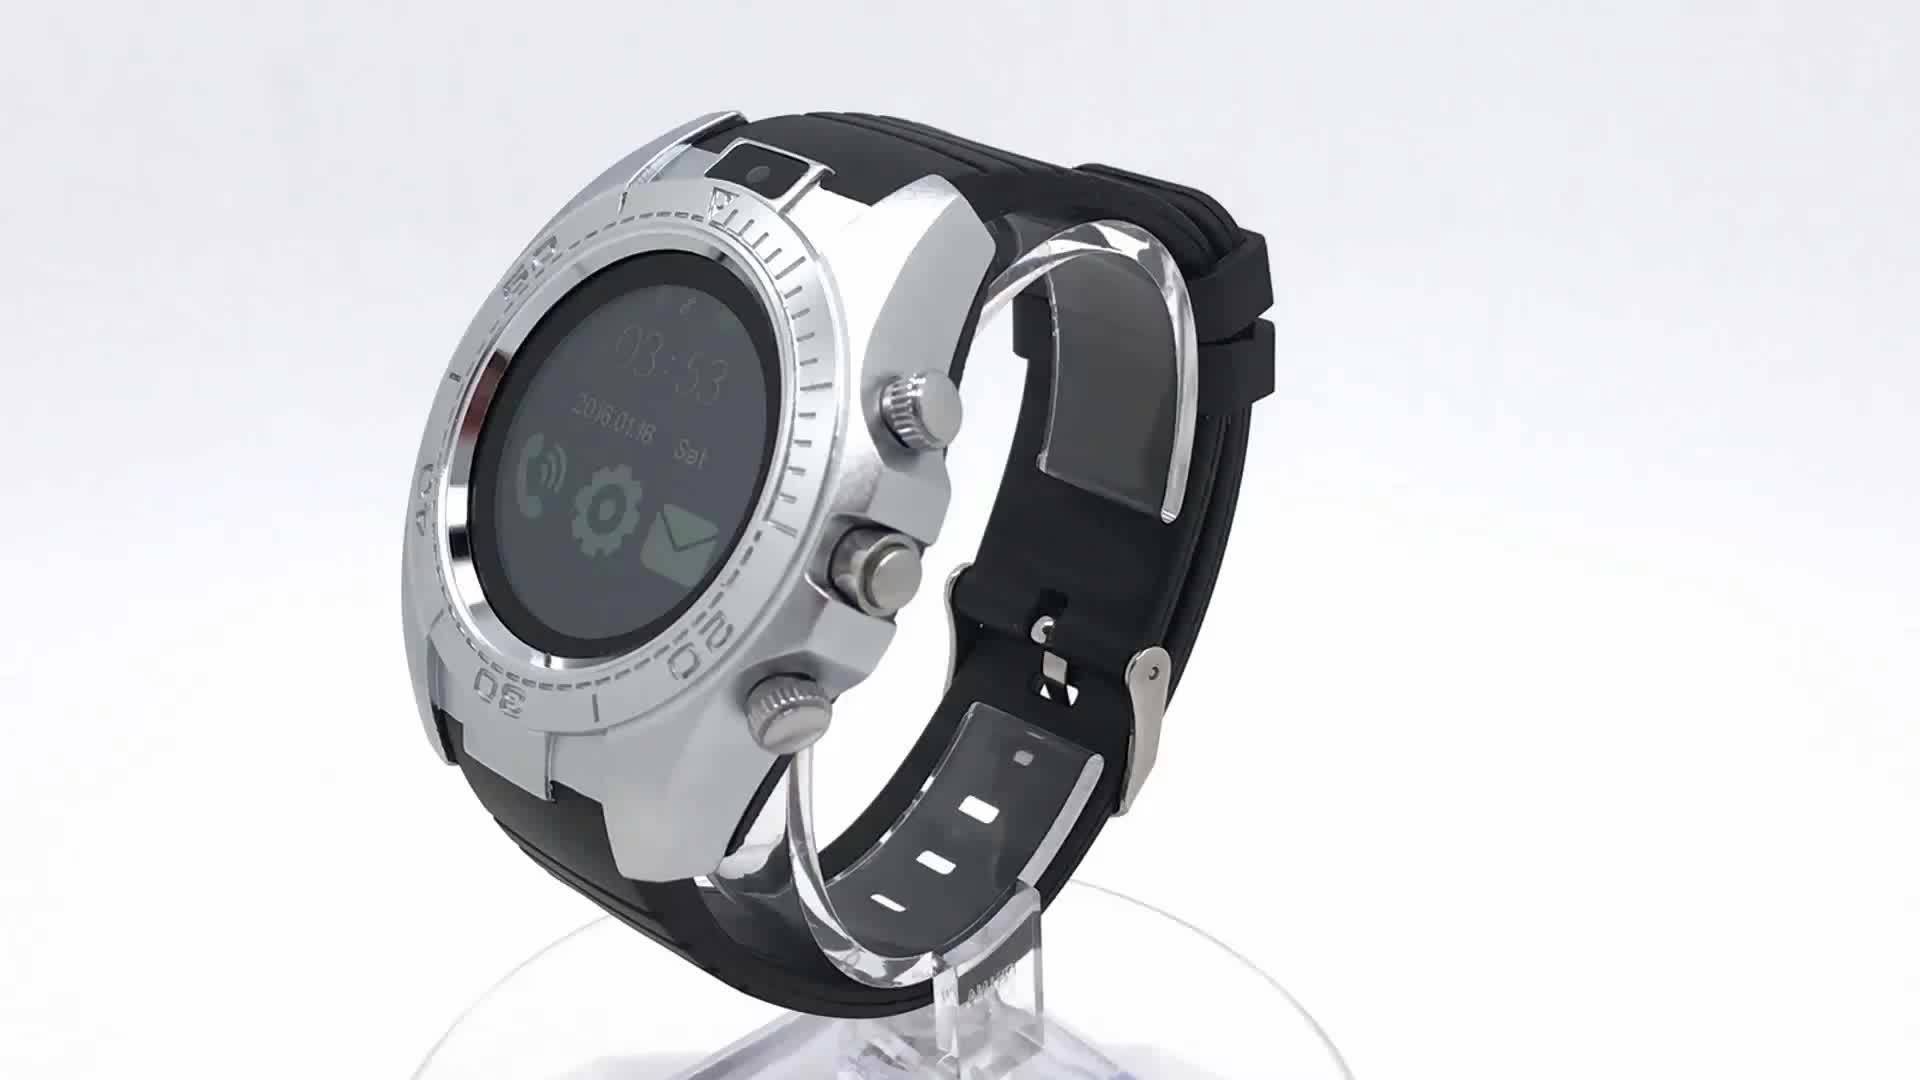 Smart Watch SW007: современные многофункциональные часы-телефон